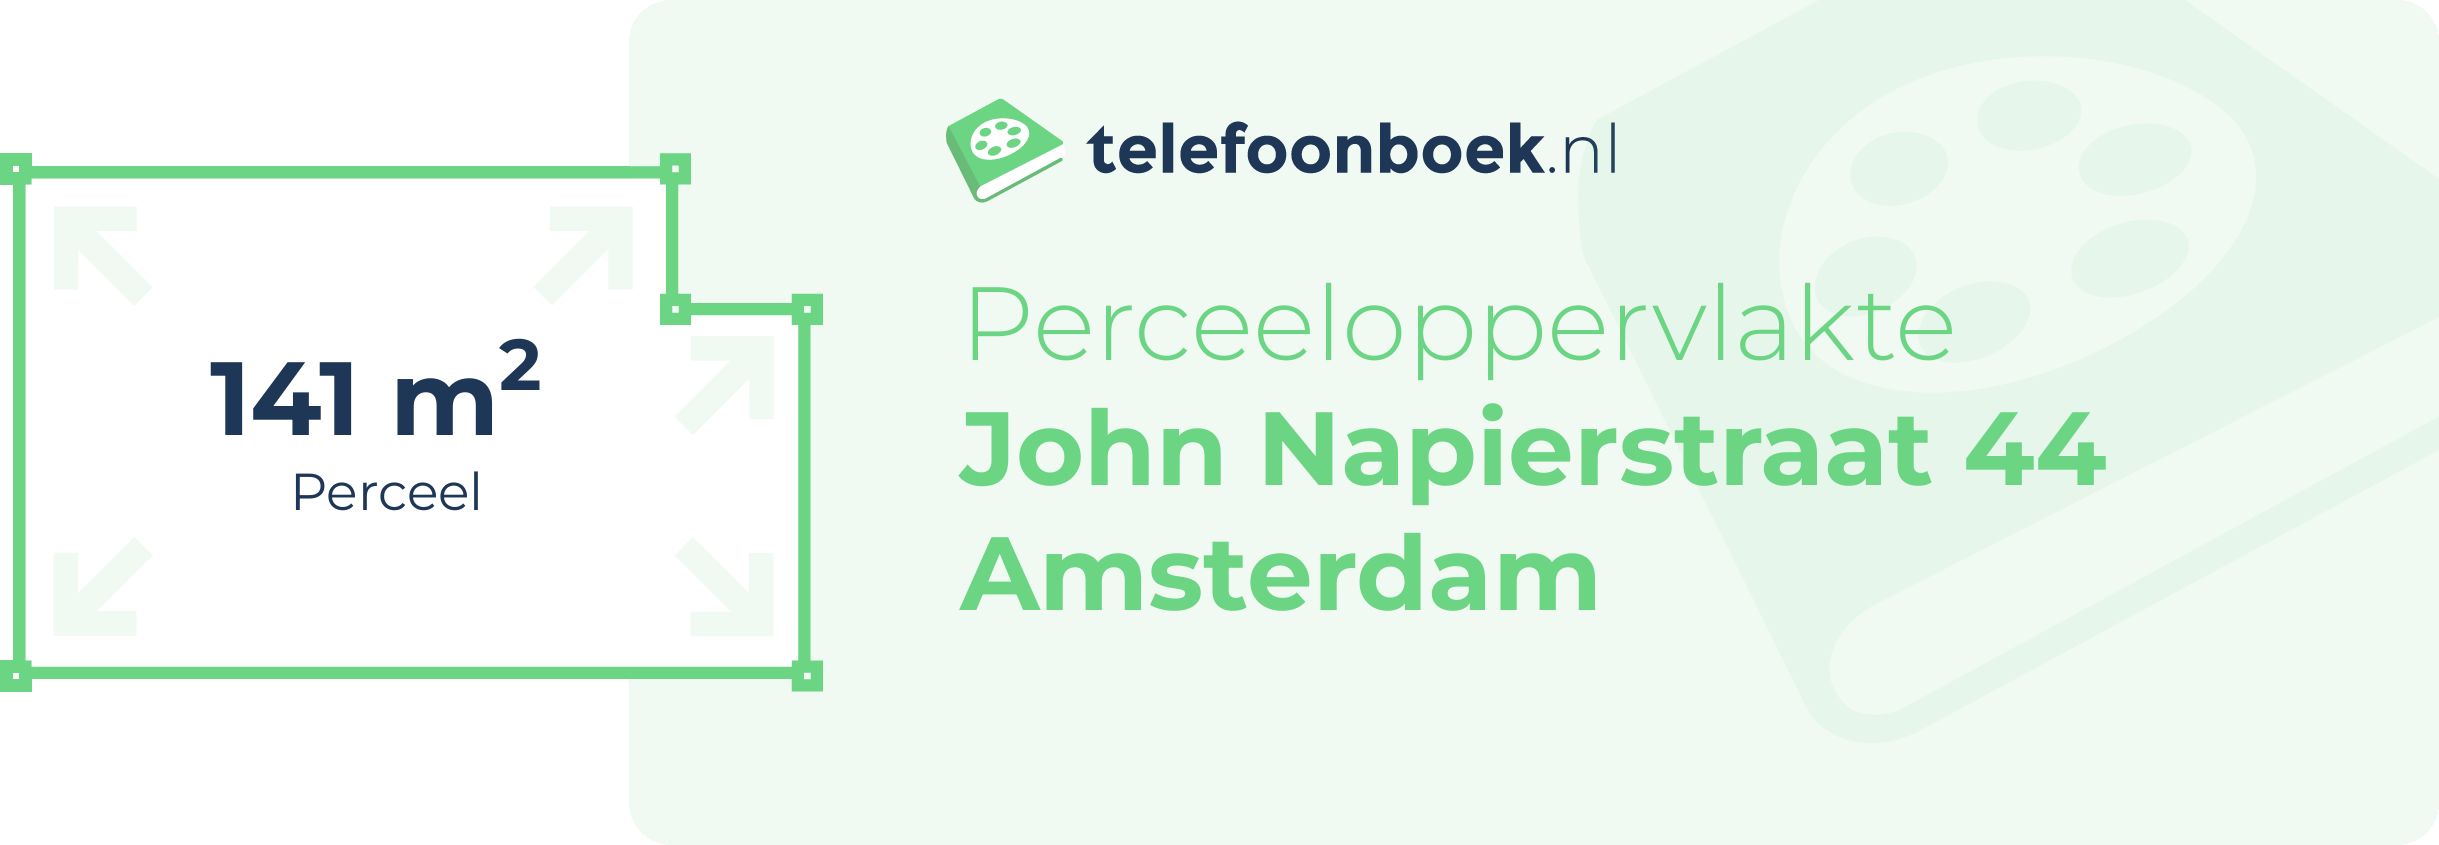 Perceeloppervlakte John Napierstraat 44 Amsterdam